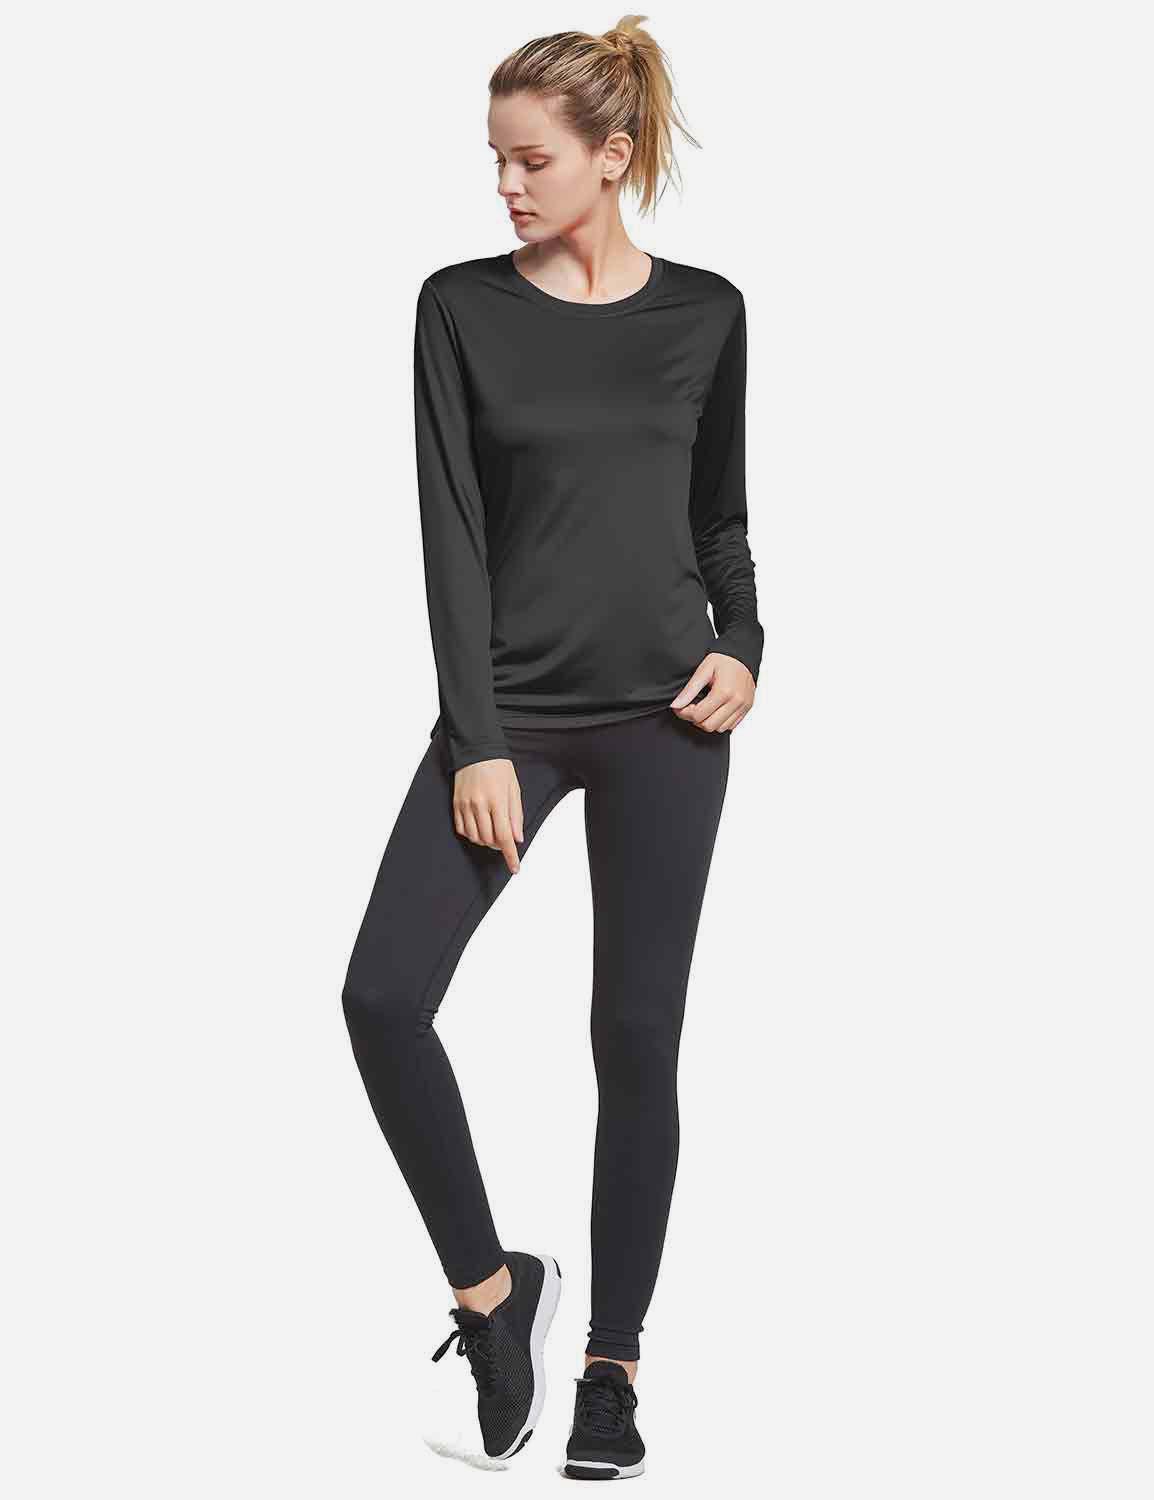 BALEAF Women's Loose Fit Tagless Workout Long Sleeved Shirt abd294 Black Full